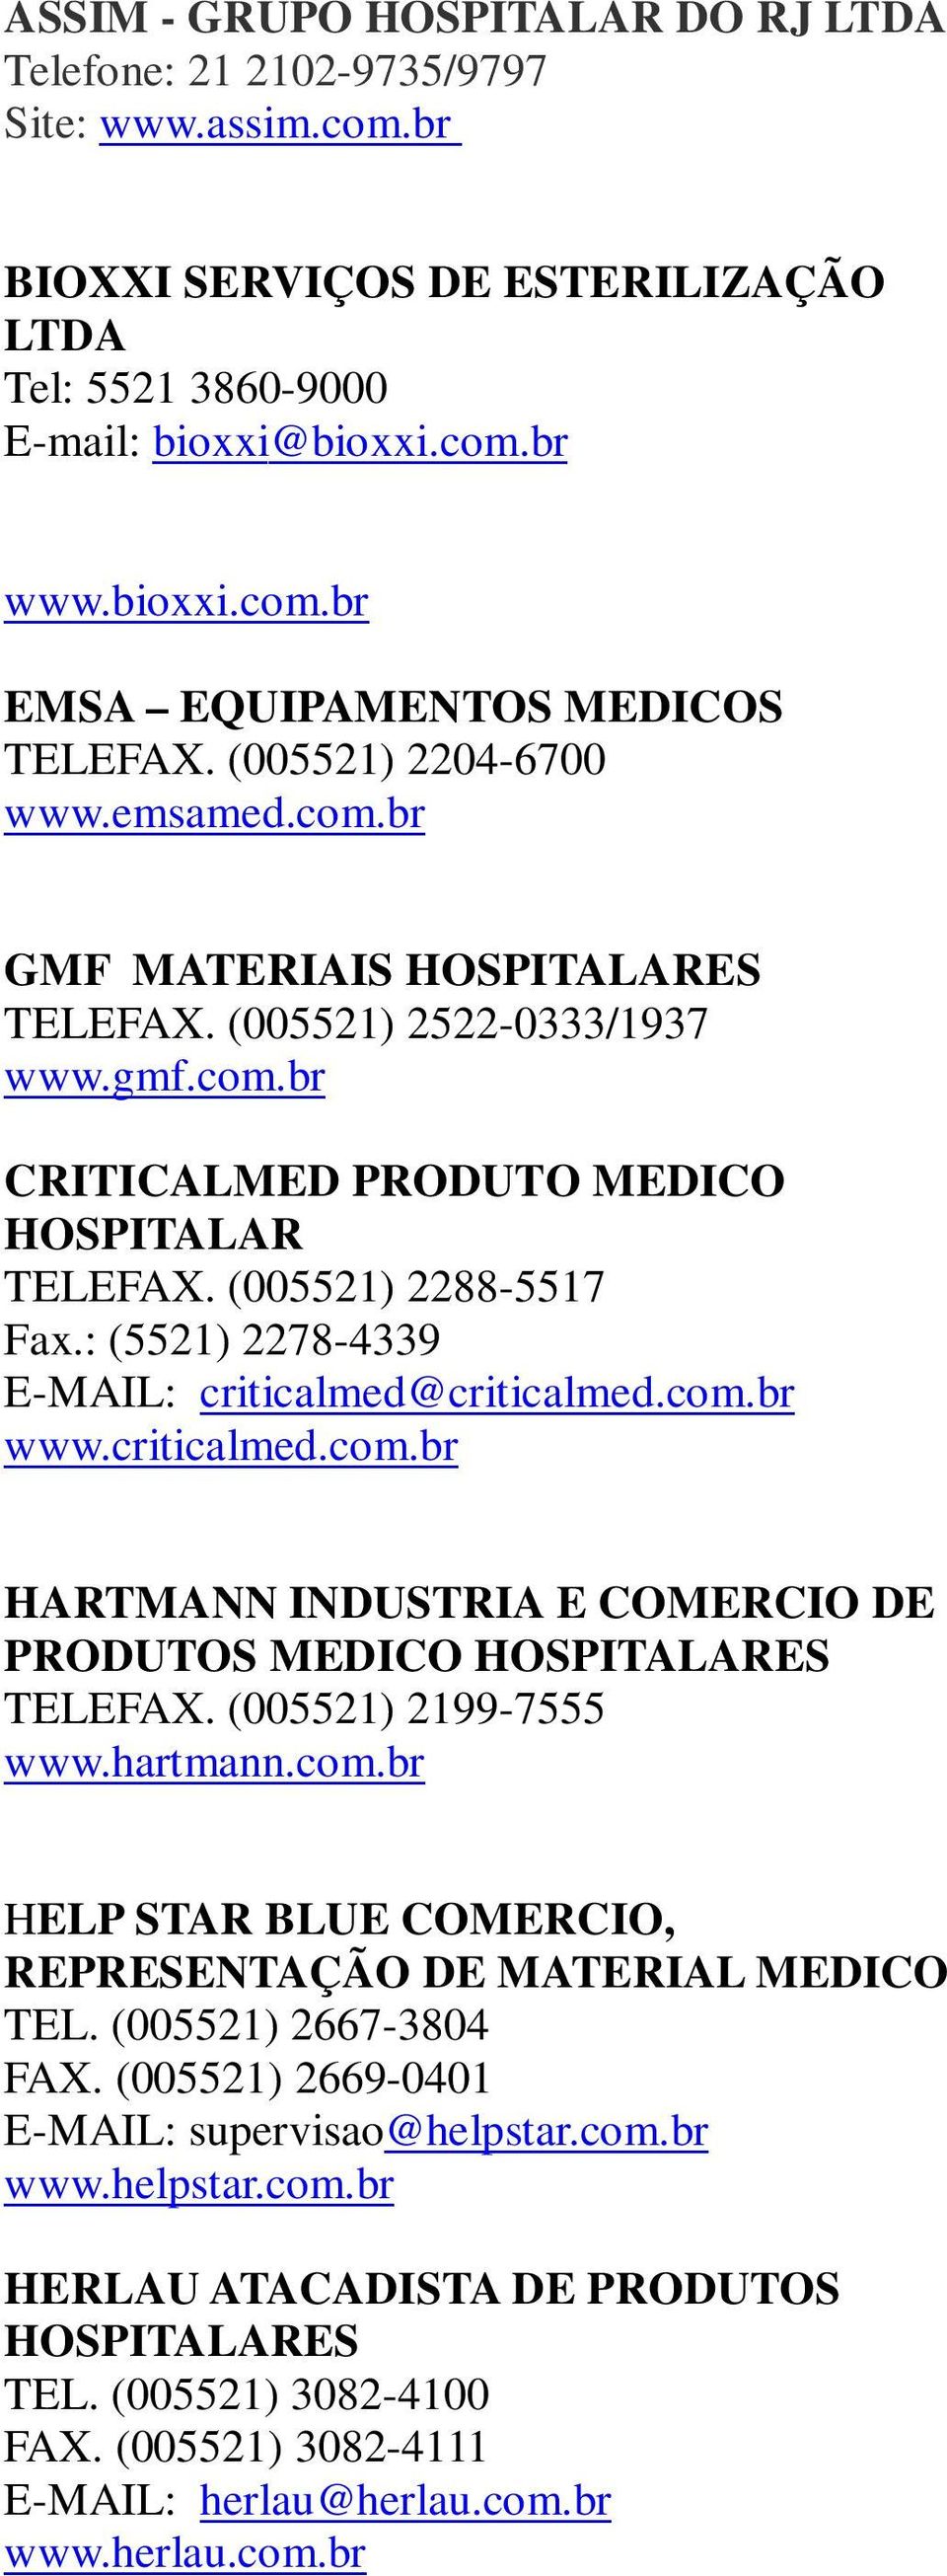 : (5521) 2278-4339 E-MAIL: criticalmed@criticalmed.com.br www.criticalmed.com.br HARTMANN INDUSTRIA E COMERCIO DE PRODUTOS MEDICO HOSPITALARES TELEFAX. (005521) 2199-7555 www.hartmann.com.br HELP STAR BLUE COMERCIO, REPRESENTAÇÃO DE MATERIAL MEDICO TEL.